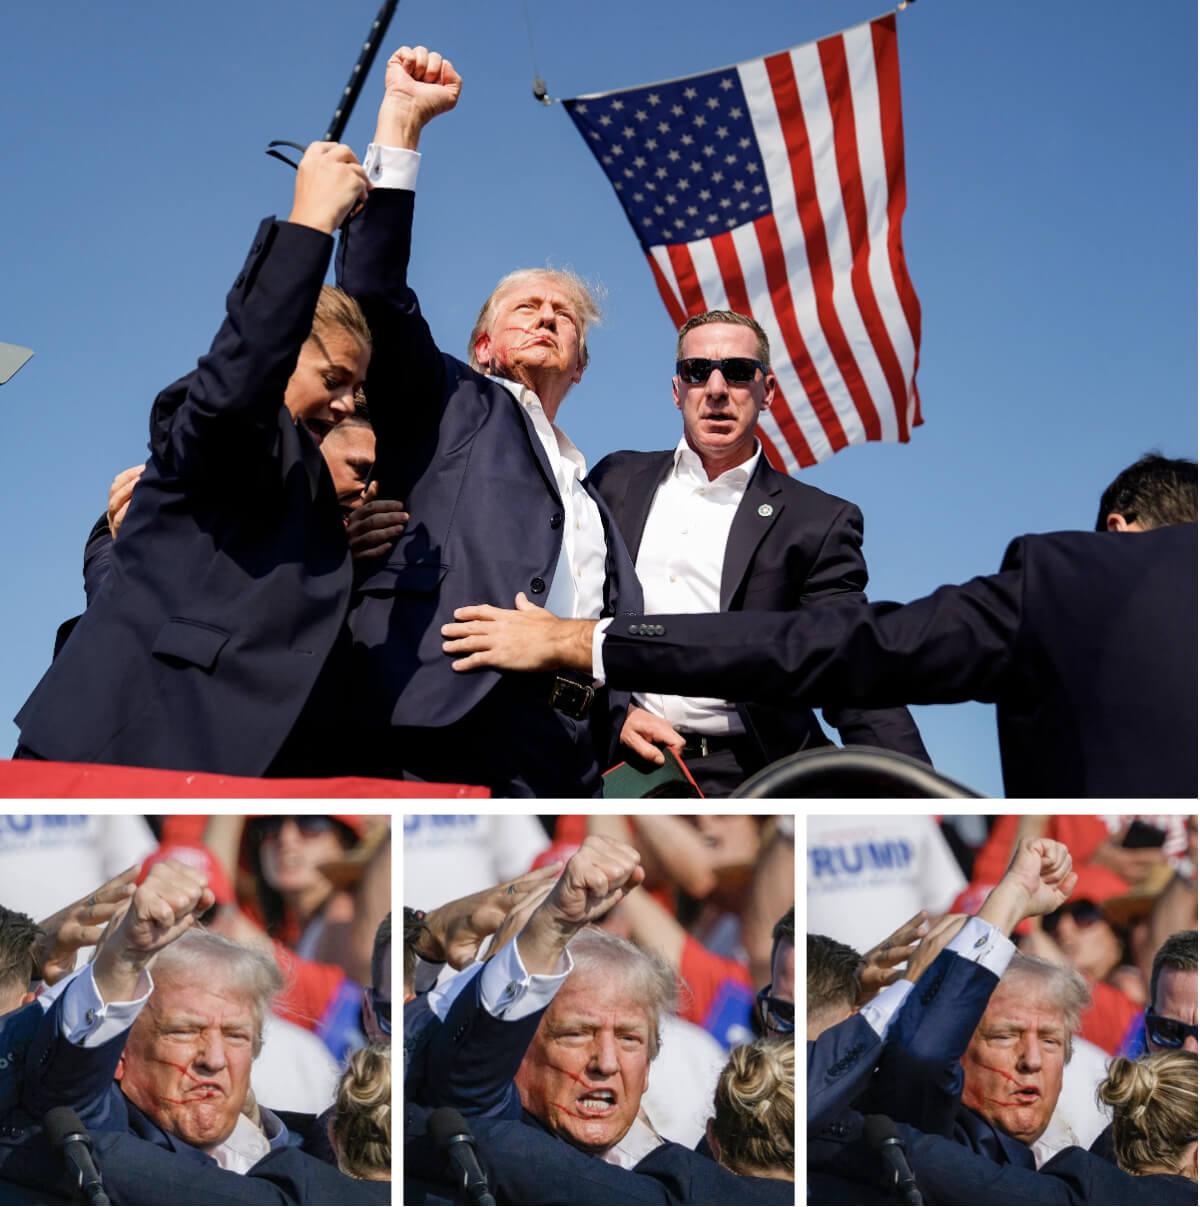 Các nhân viên Sở Mật vụ Hoa Kỳ vội vã bảo vệ cựu Tổng thống Donald Trump sau khi những phát đạn bắn ra nhắm vào ông. Khi cựu tổng thống đứng lên, ông giơ nắm tay về phía đám đông, và có vẻ như đang nói: “Chiến đấu, chiến đấu, chiến đấu!” (Ảnh: Evan Vucci/AP Photo, Jeff Swensen/Getty Images)